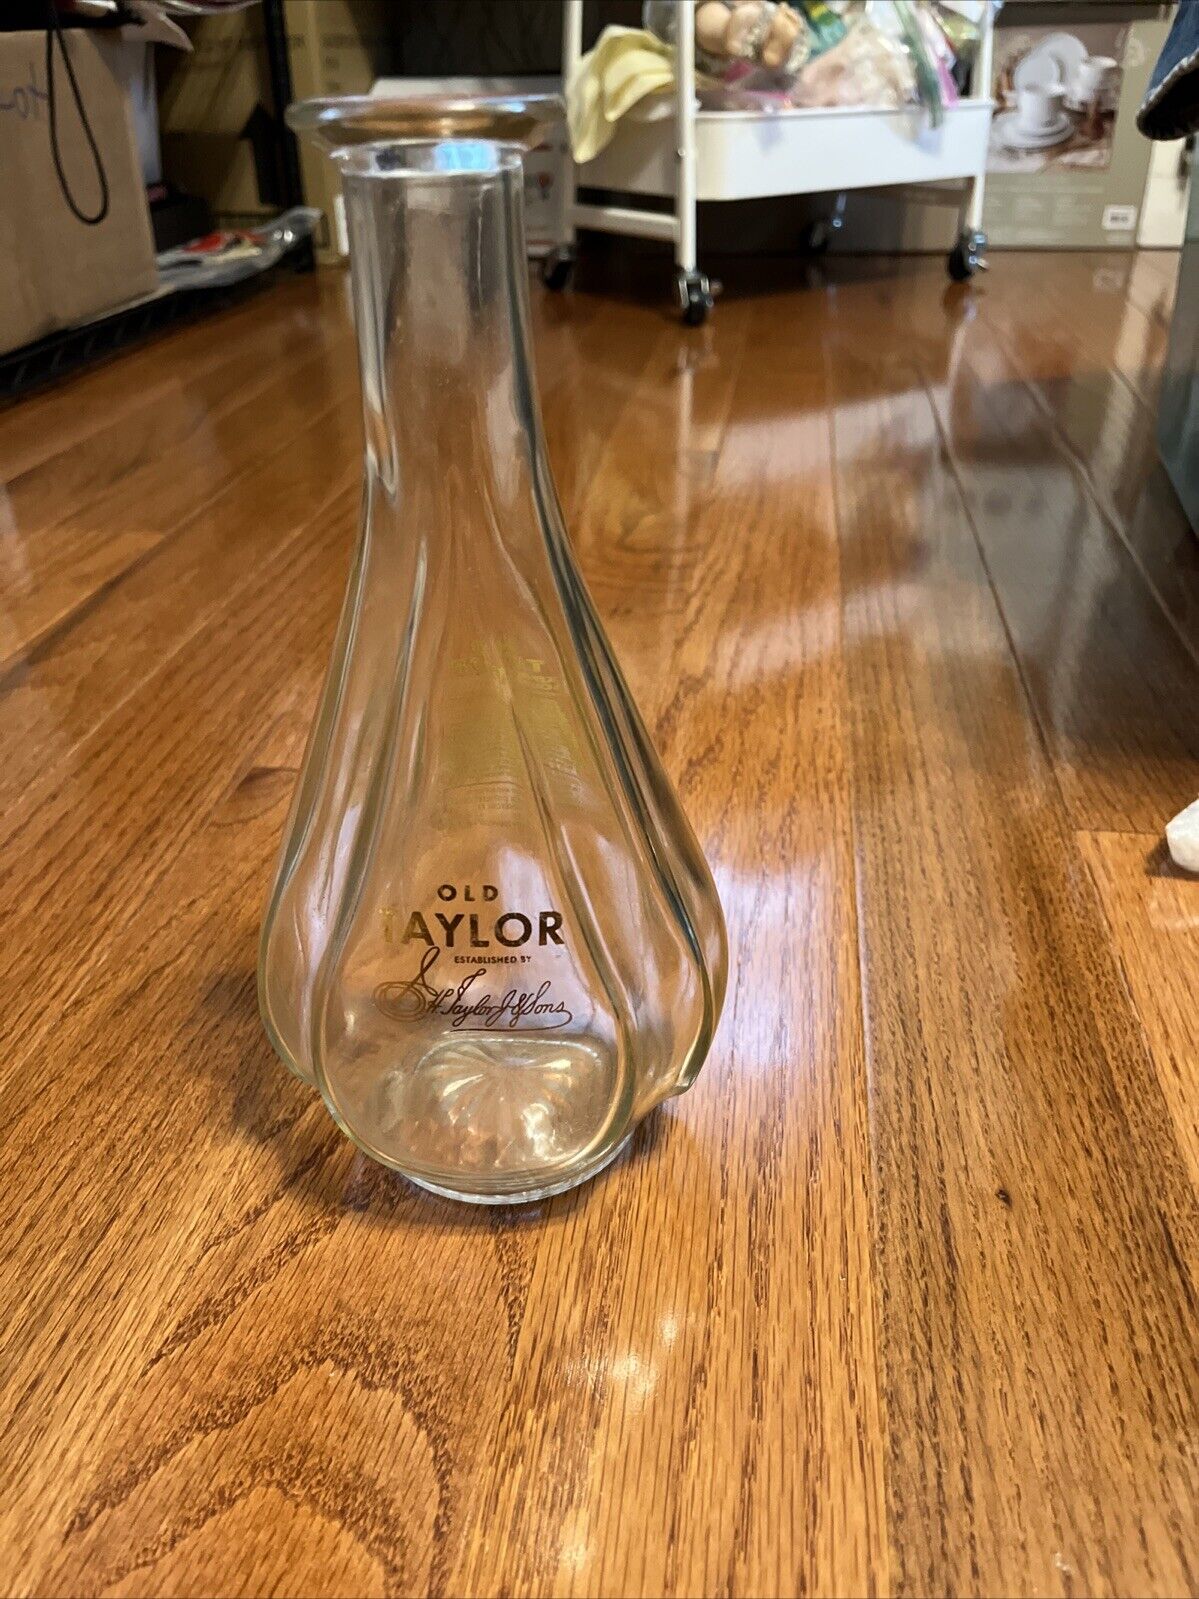 Vintage Old Taylor Bourbon Bottle 1950s NO STOPPER